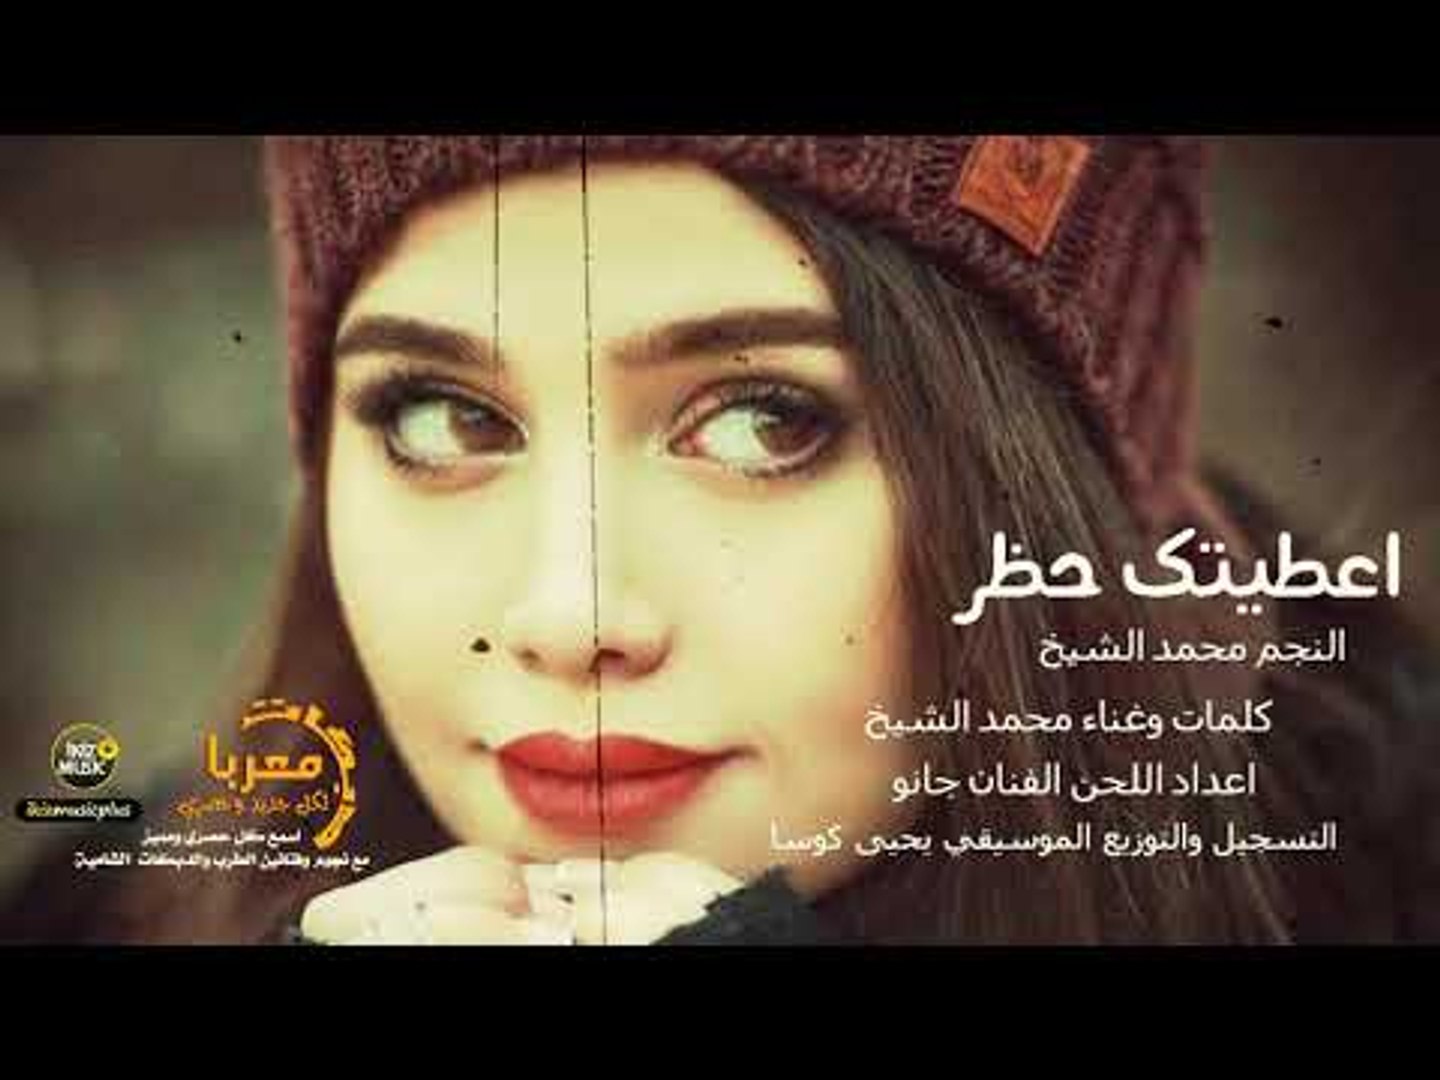 اغنية اعطيتك حظر جديد النجم محمد الشيخ 2019 اغاني حزينه - video Dailymotion